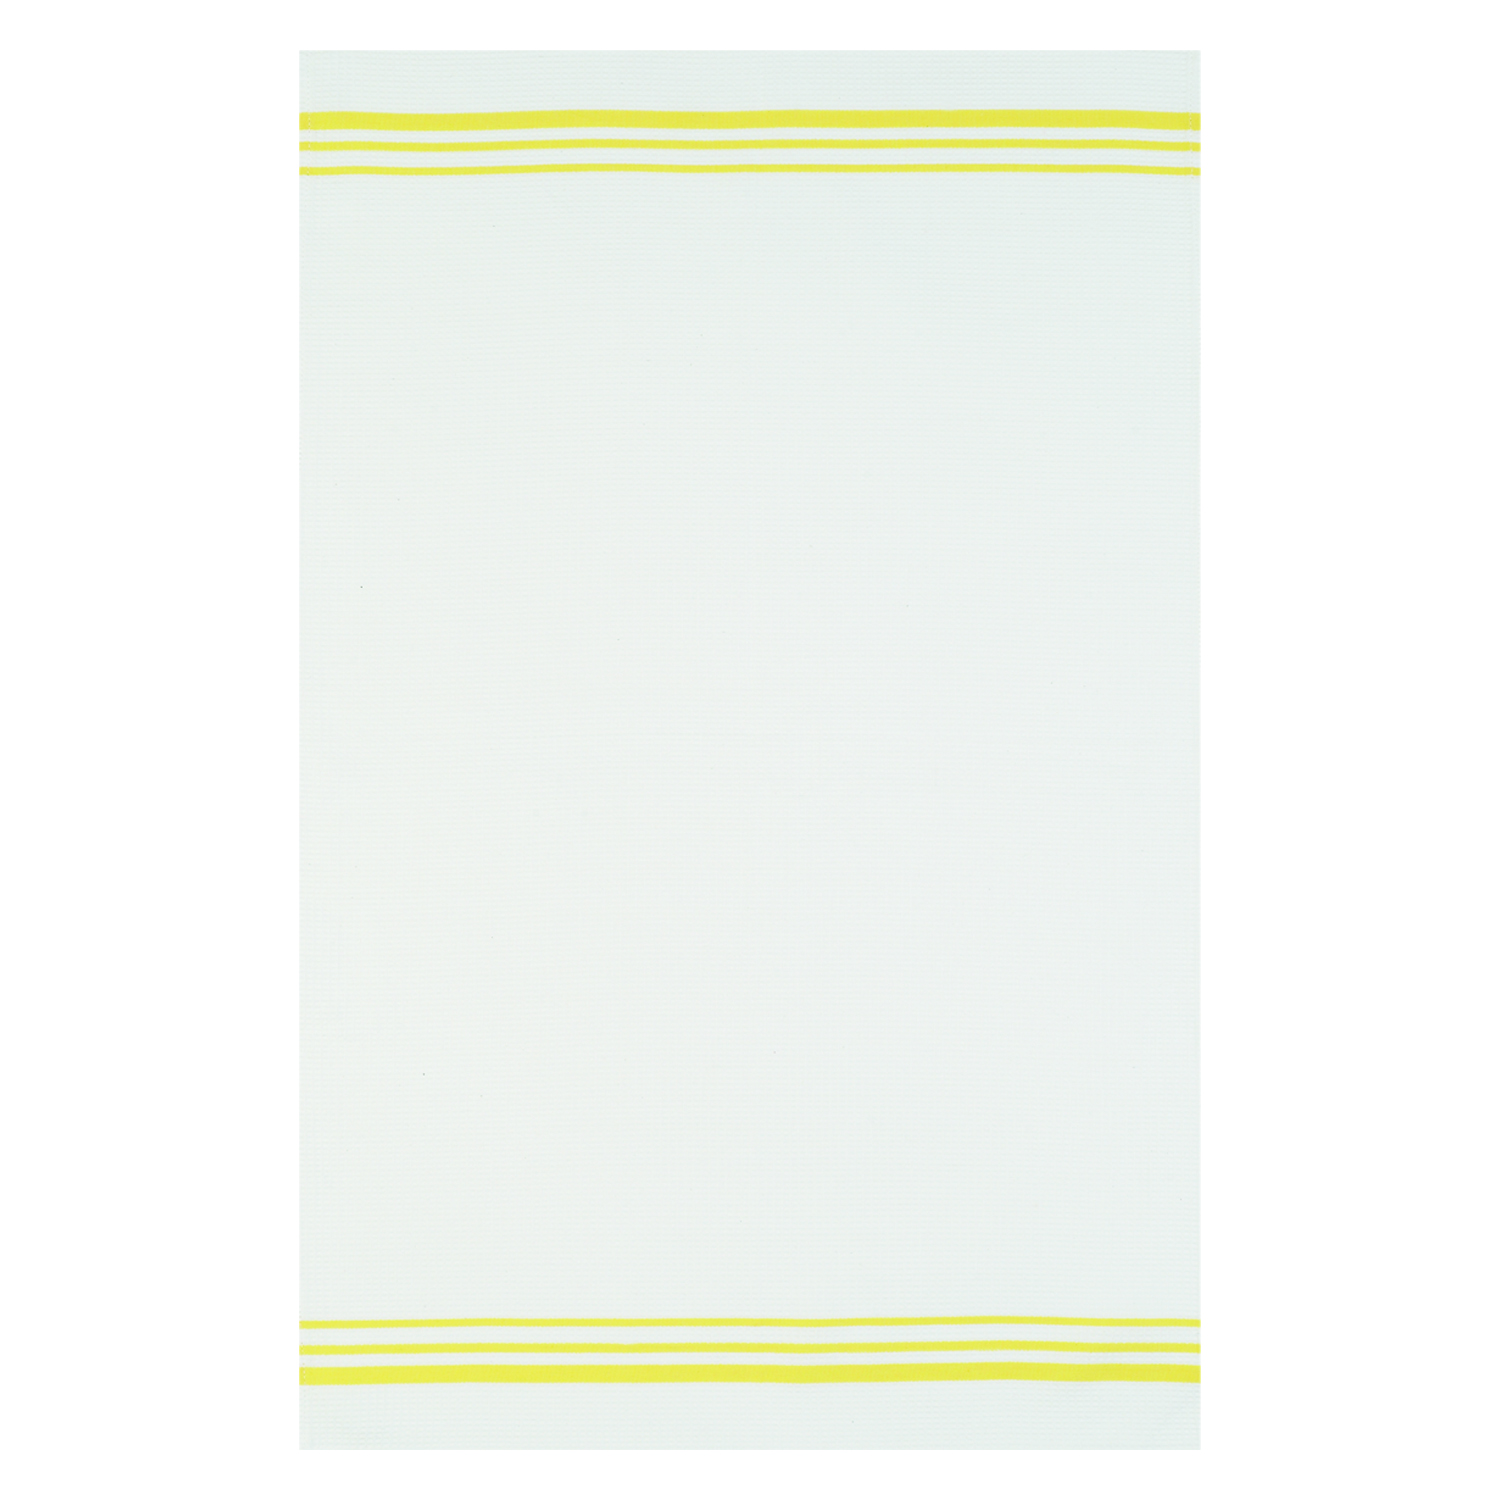 Geschirrtuch Waffelpikee - Farbe weiß/gelb